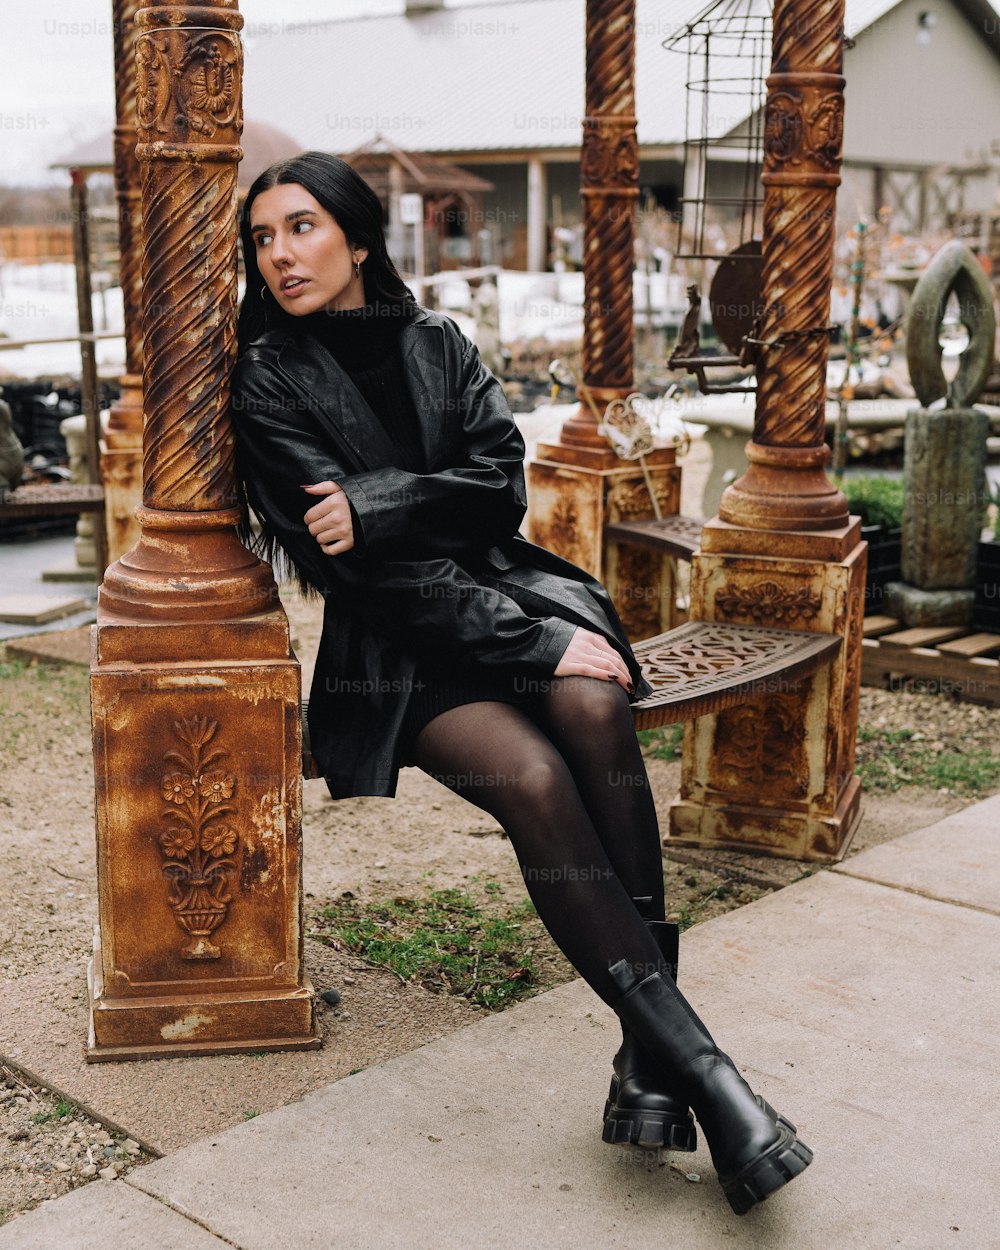 Una mujer sentada en un banco con un vestido negro